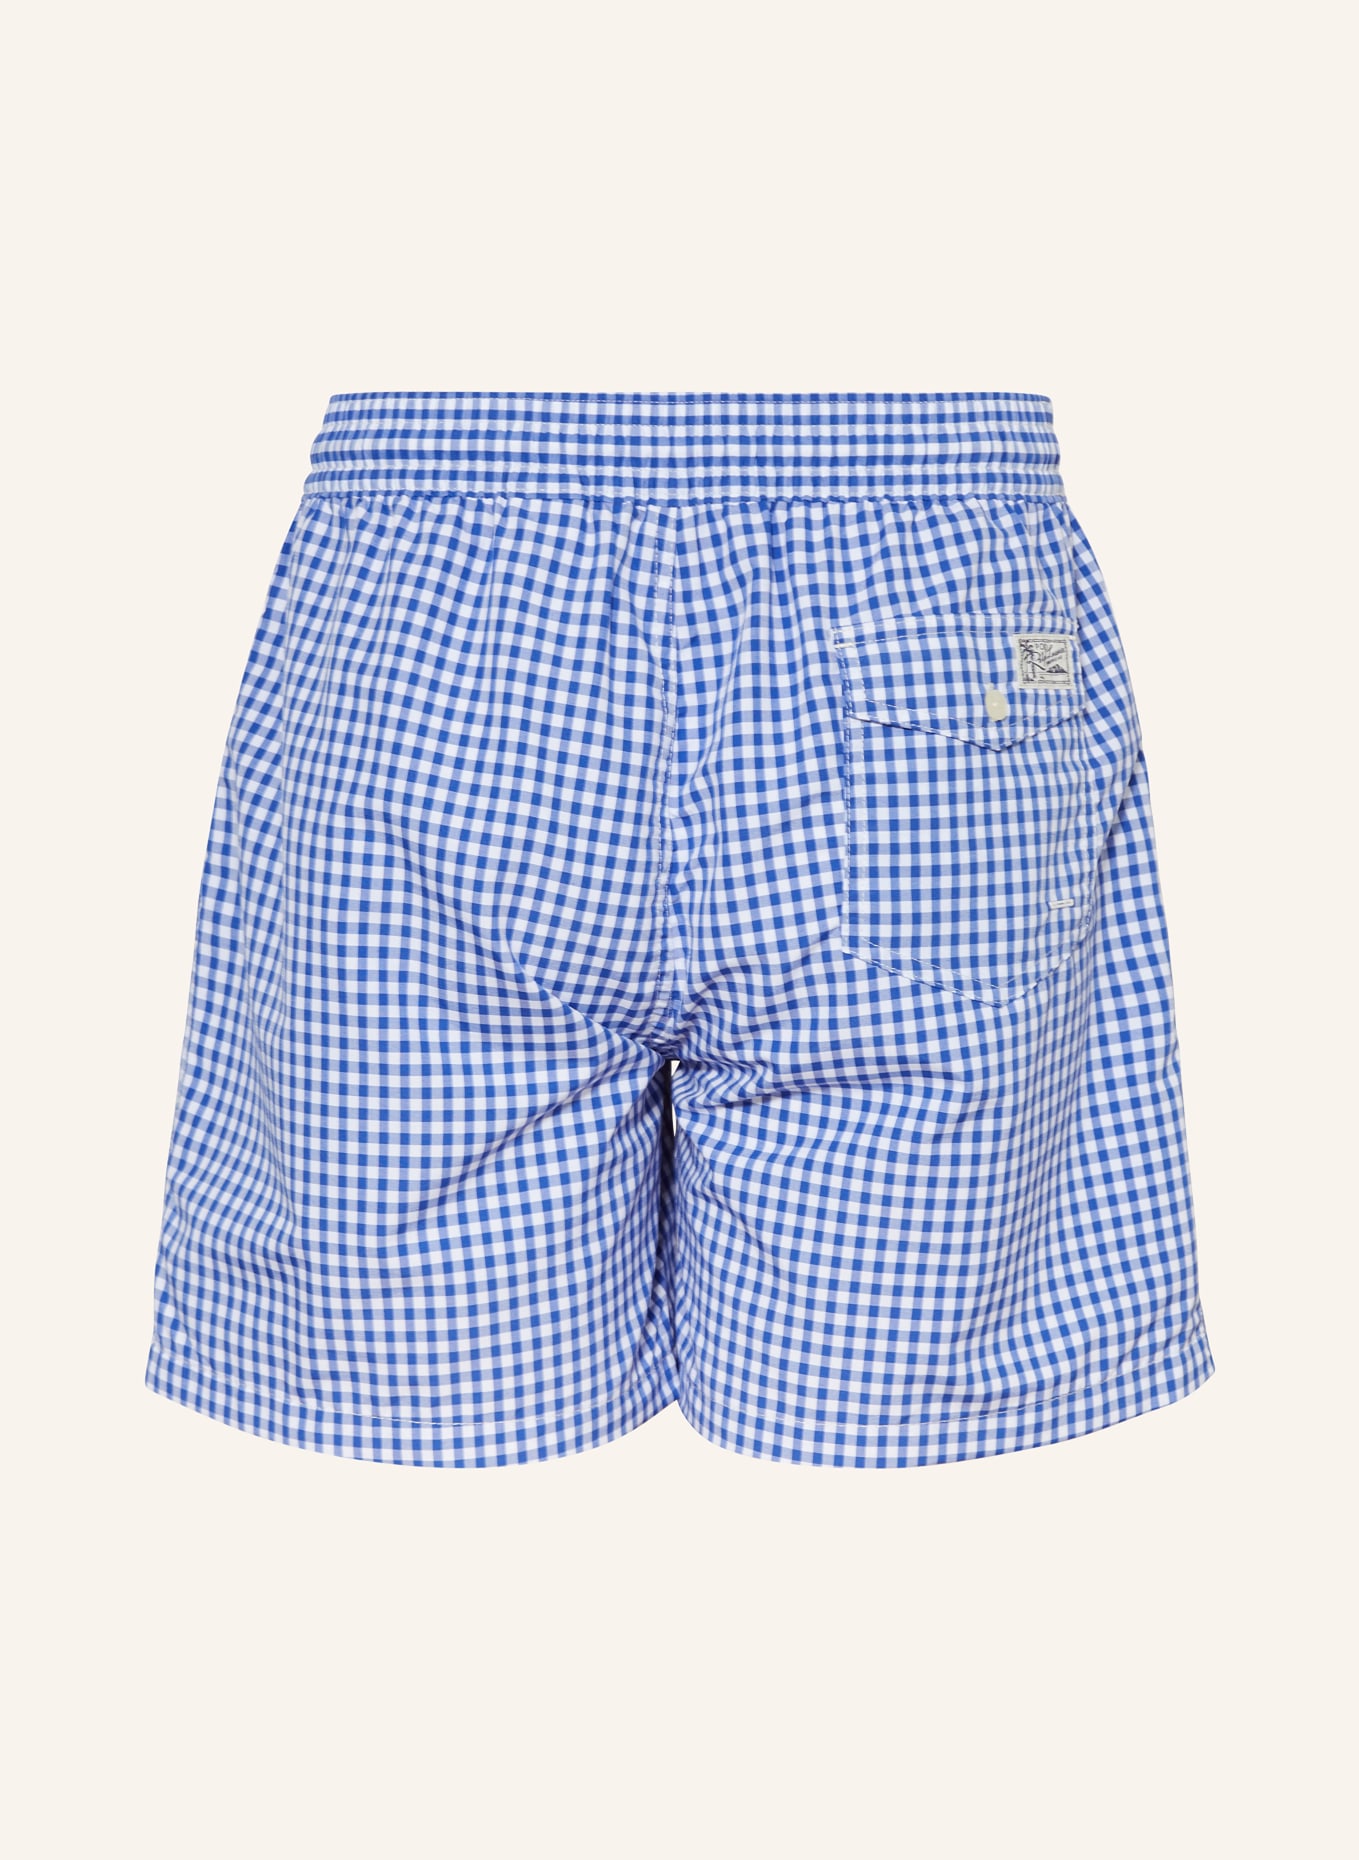 POLO RALPH LAUREN Swim shorts, Color: BLUE/ WHITE (Image 2)